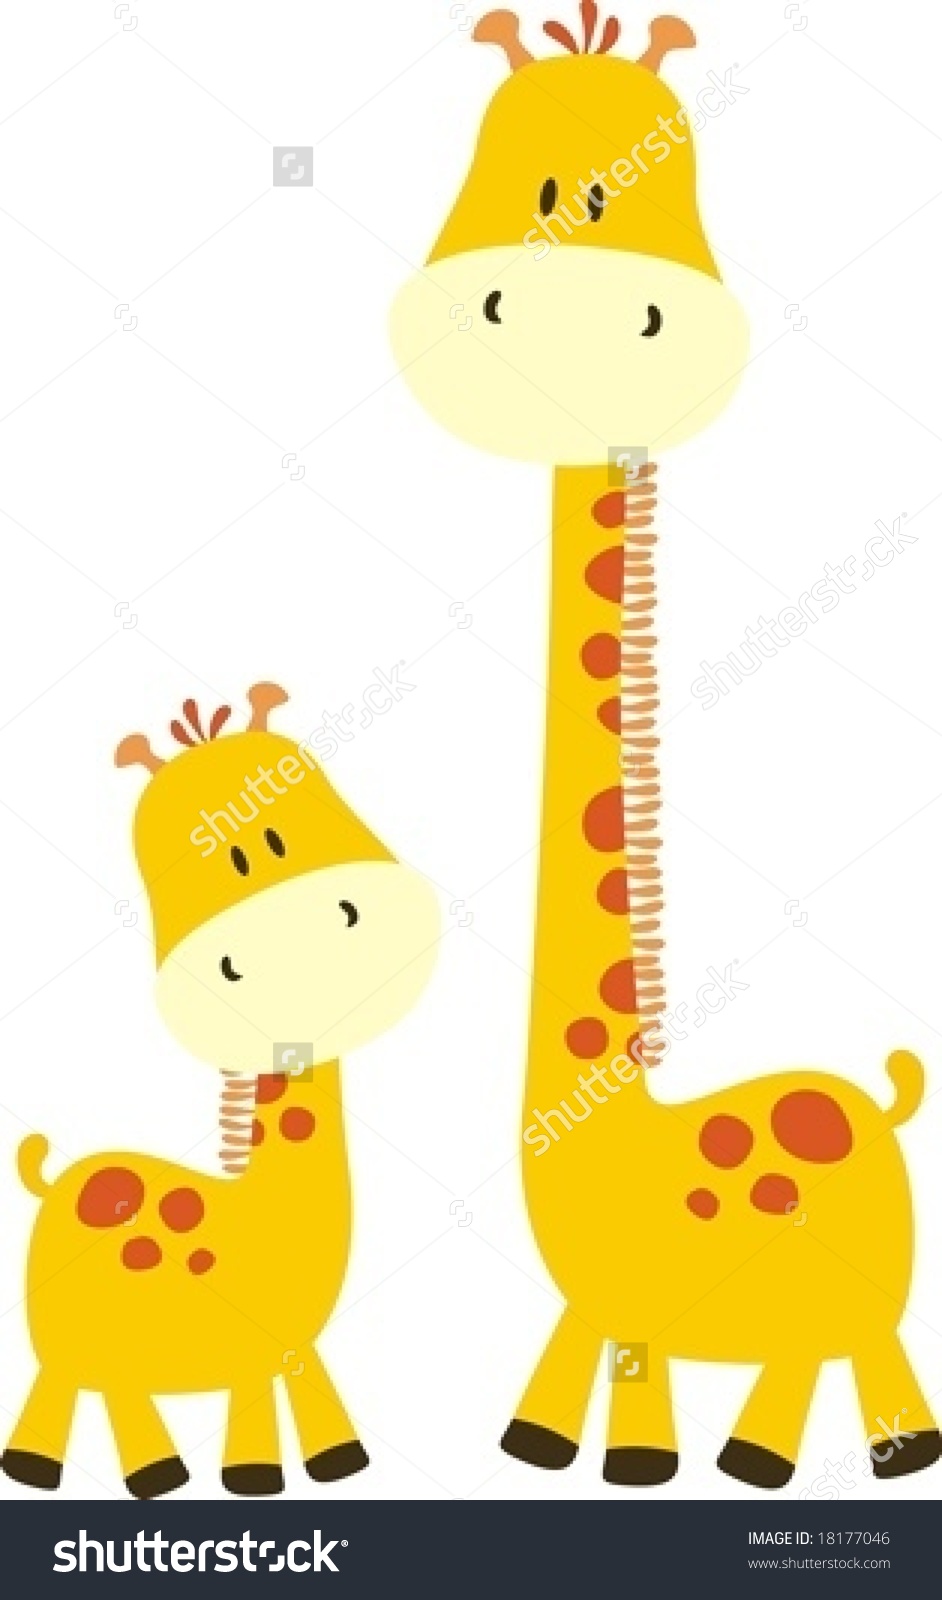 baby giraffe cartoons - Googl